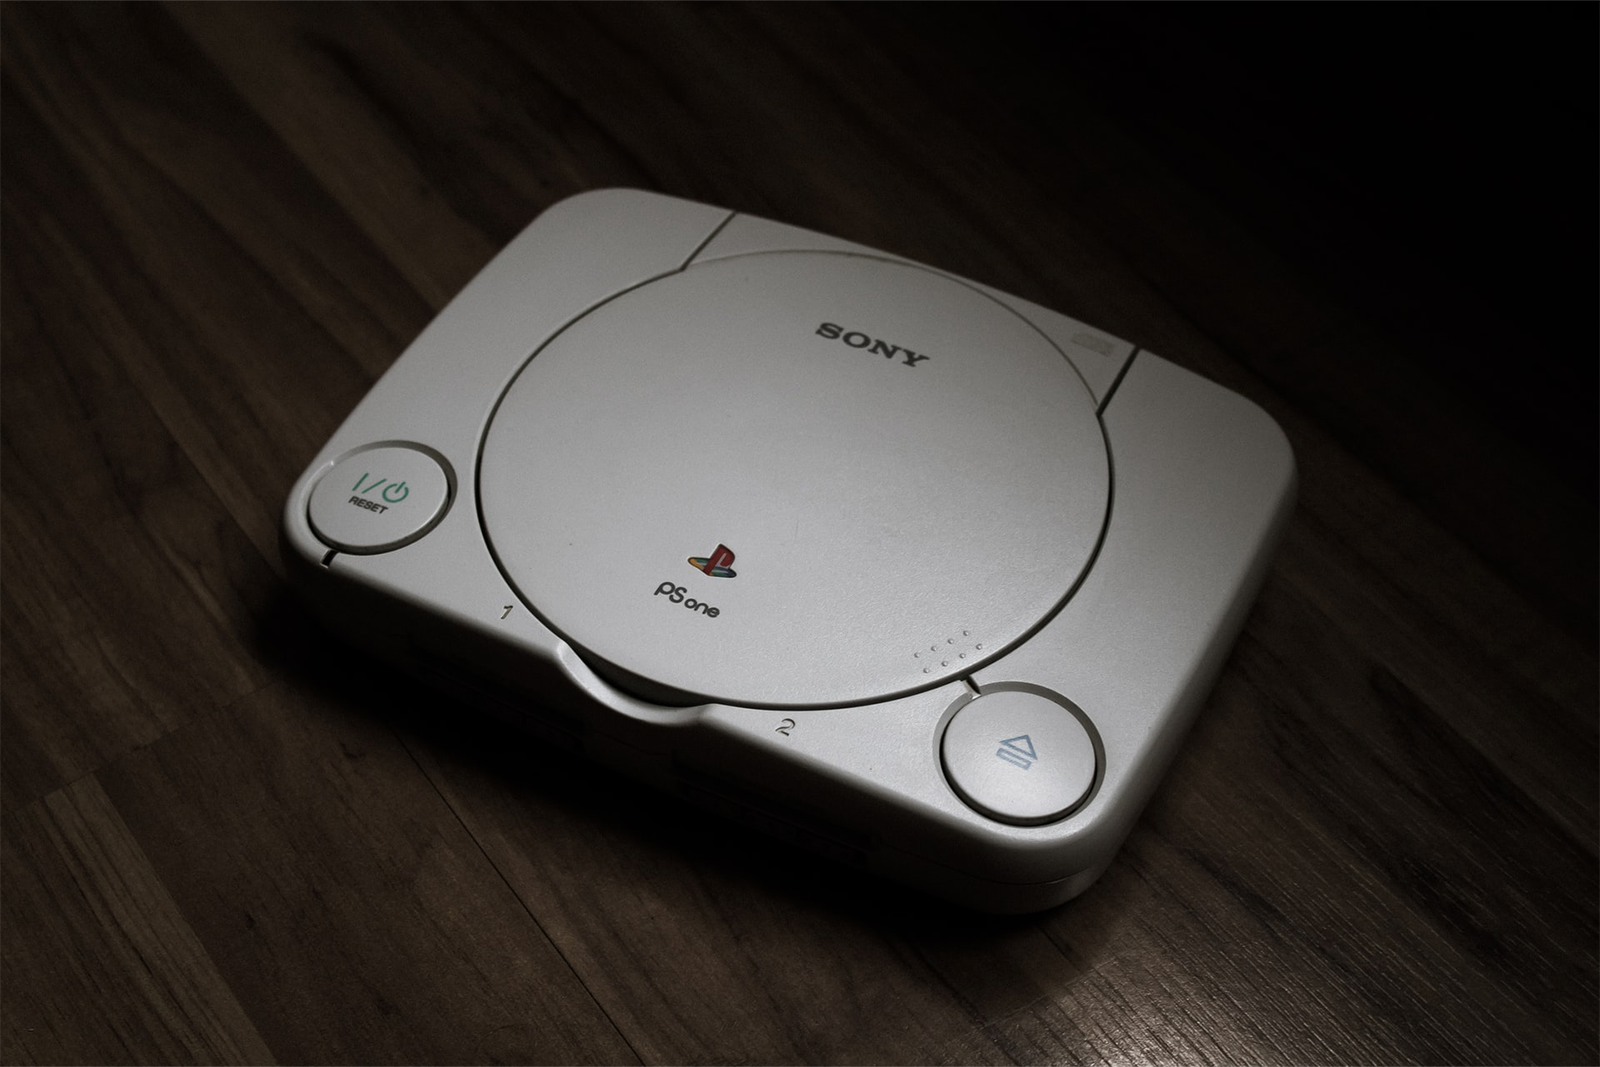 Sony, La PlayStation 1 cumple 25 años de haberse lanzado en Japón, PS1, Videojuegos, TECNOLOGIA